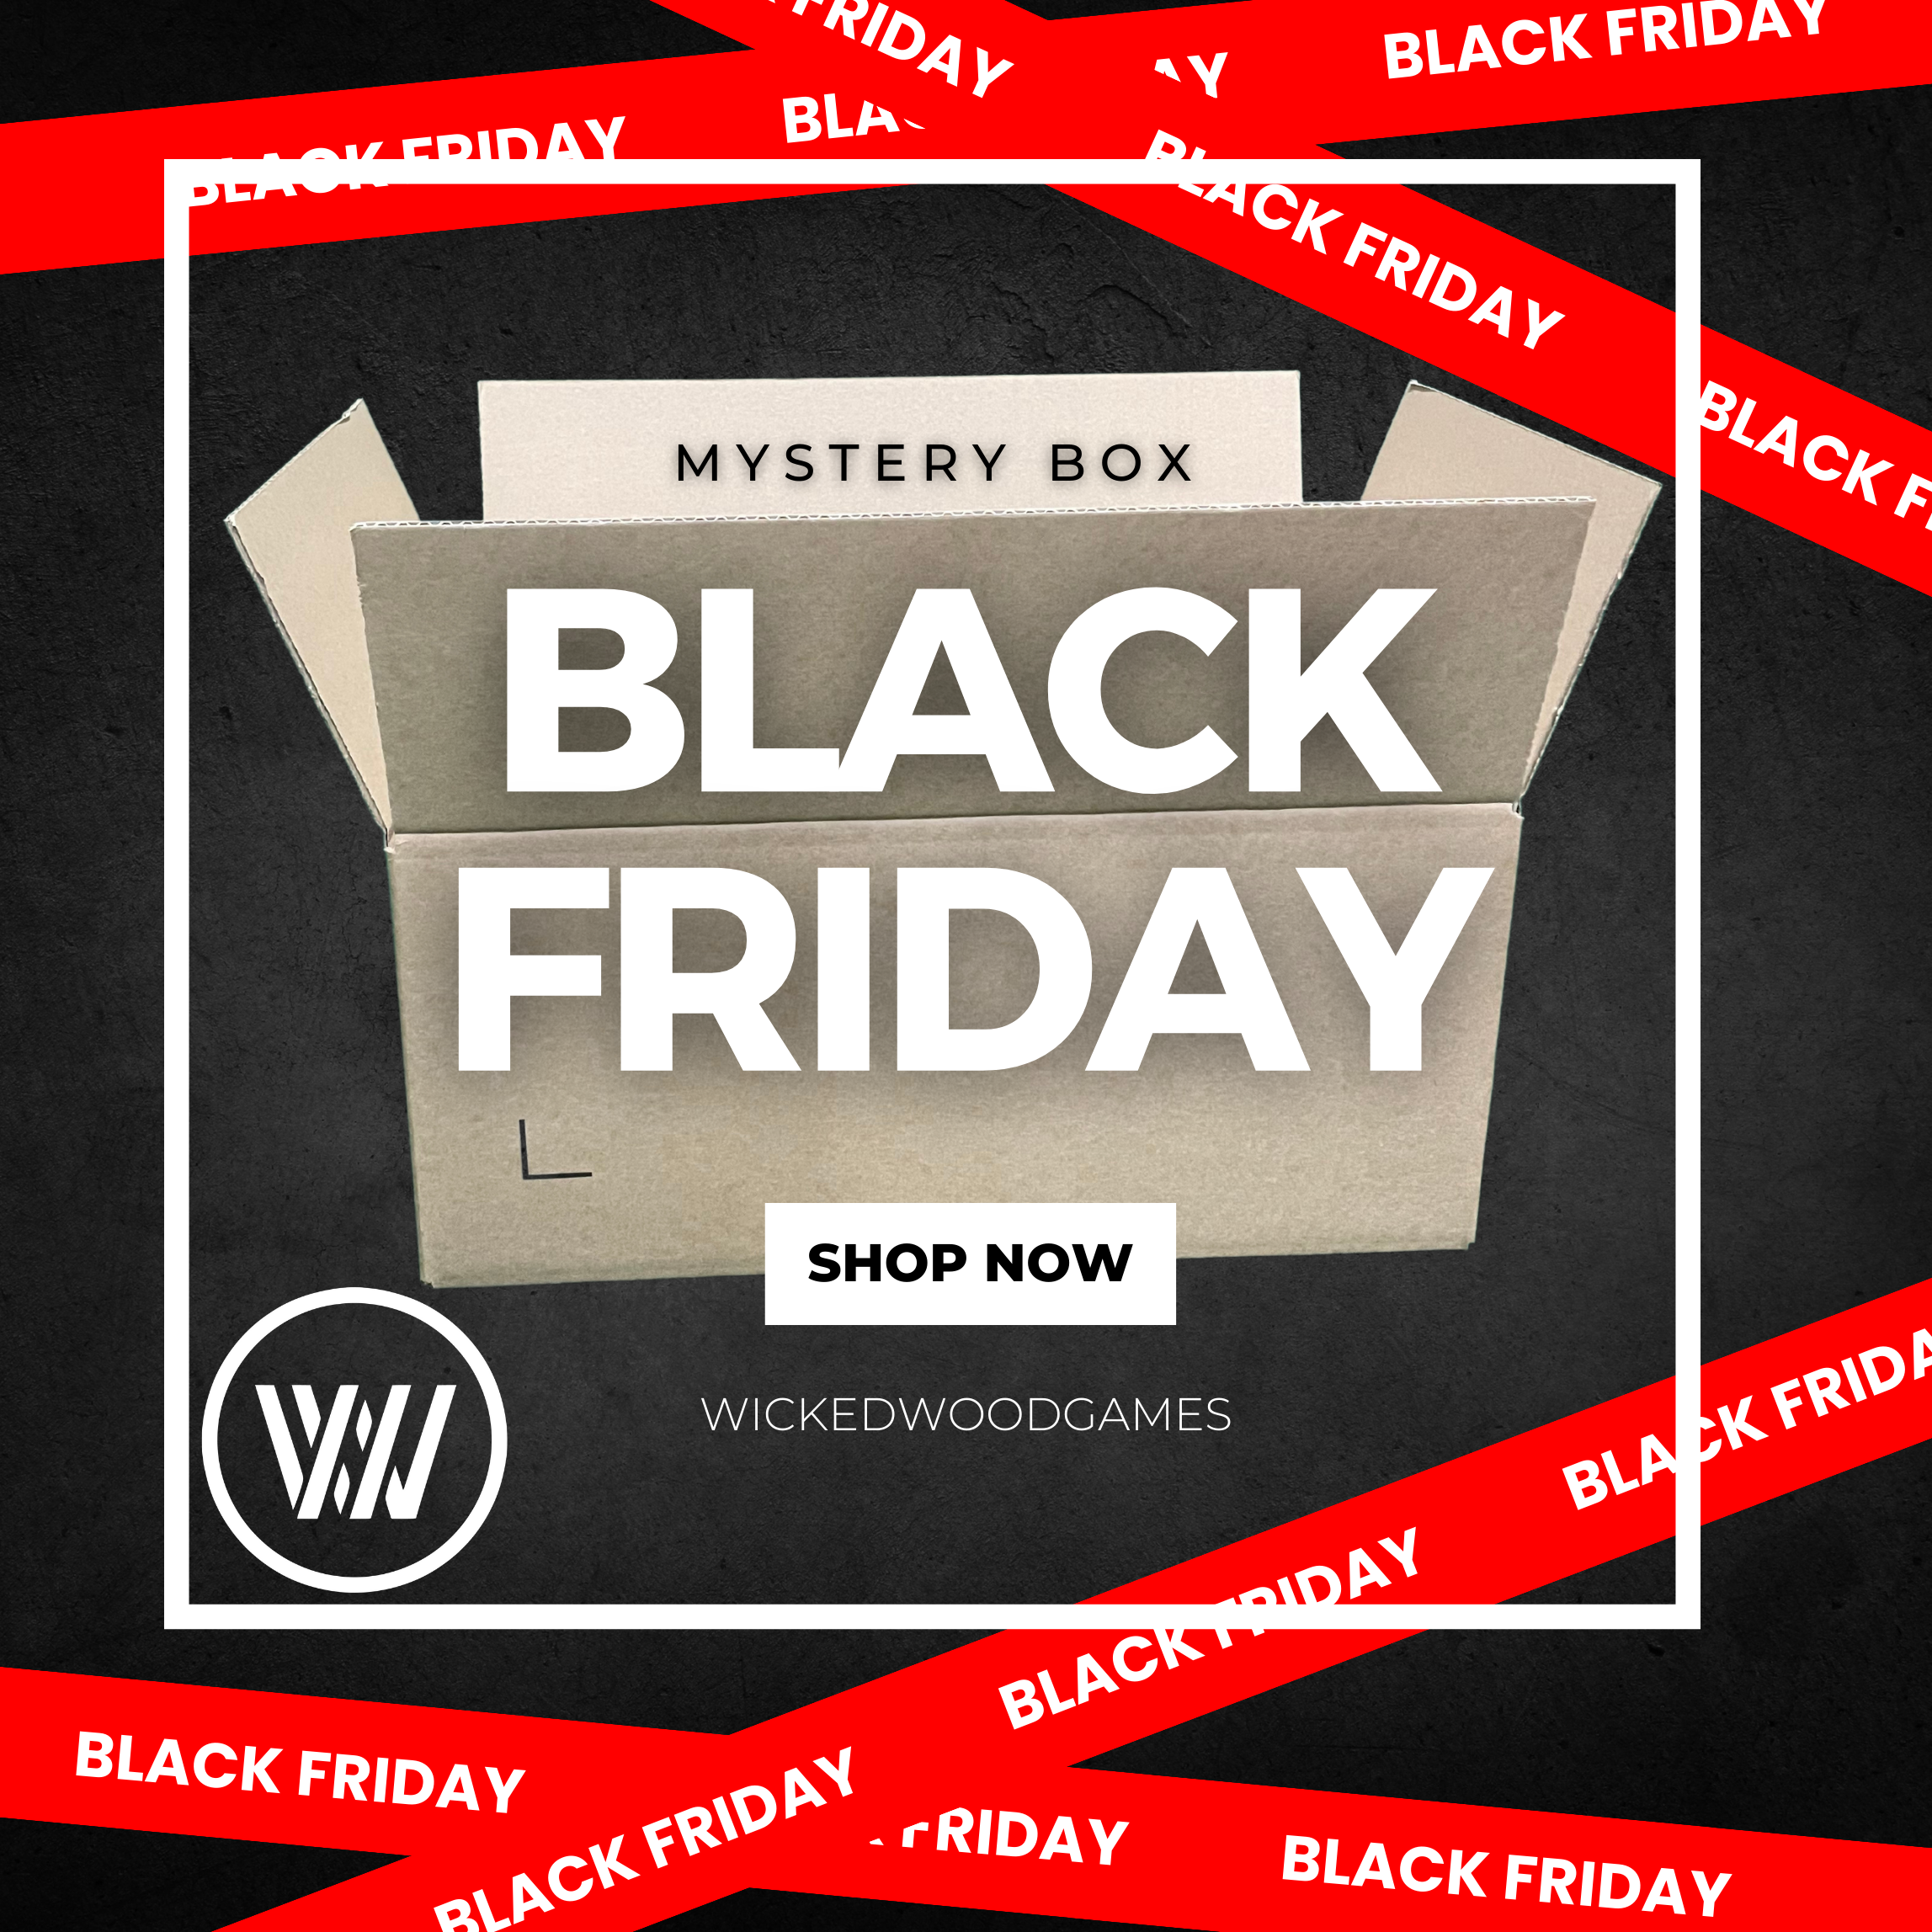 BLACK FRIDAY MYSTERY BOX